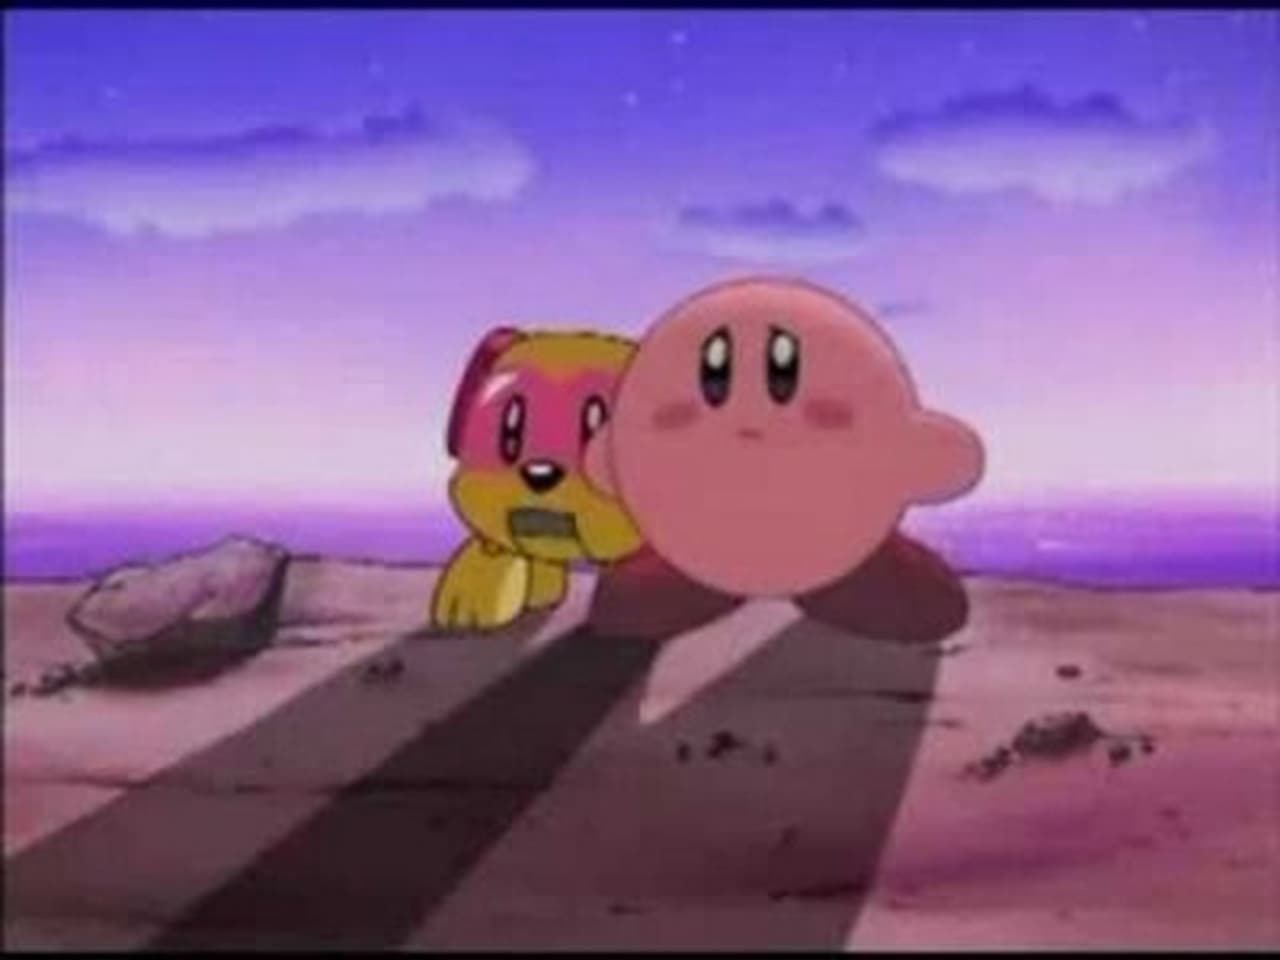 Kirbys Pet Peeve